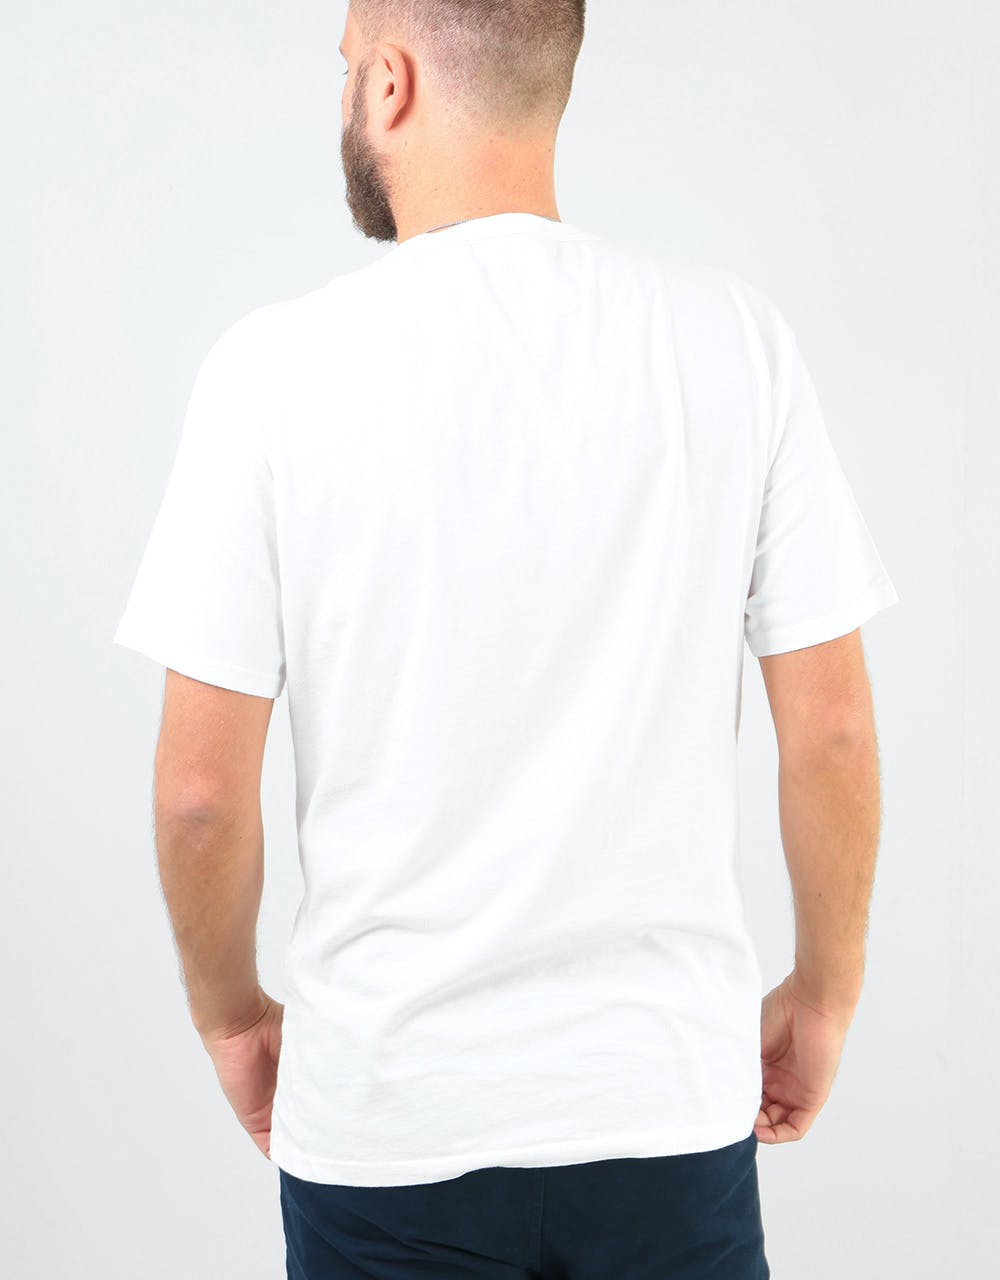 Levi's Skateboarding 2 Pack T-Shirt - Jet Black/Bright White